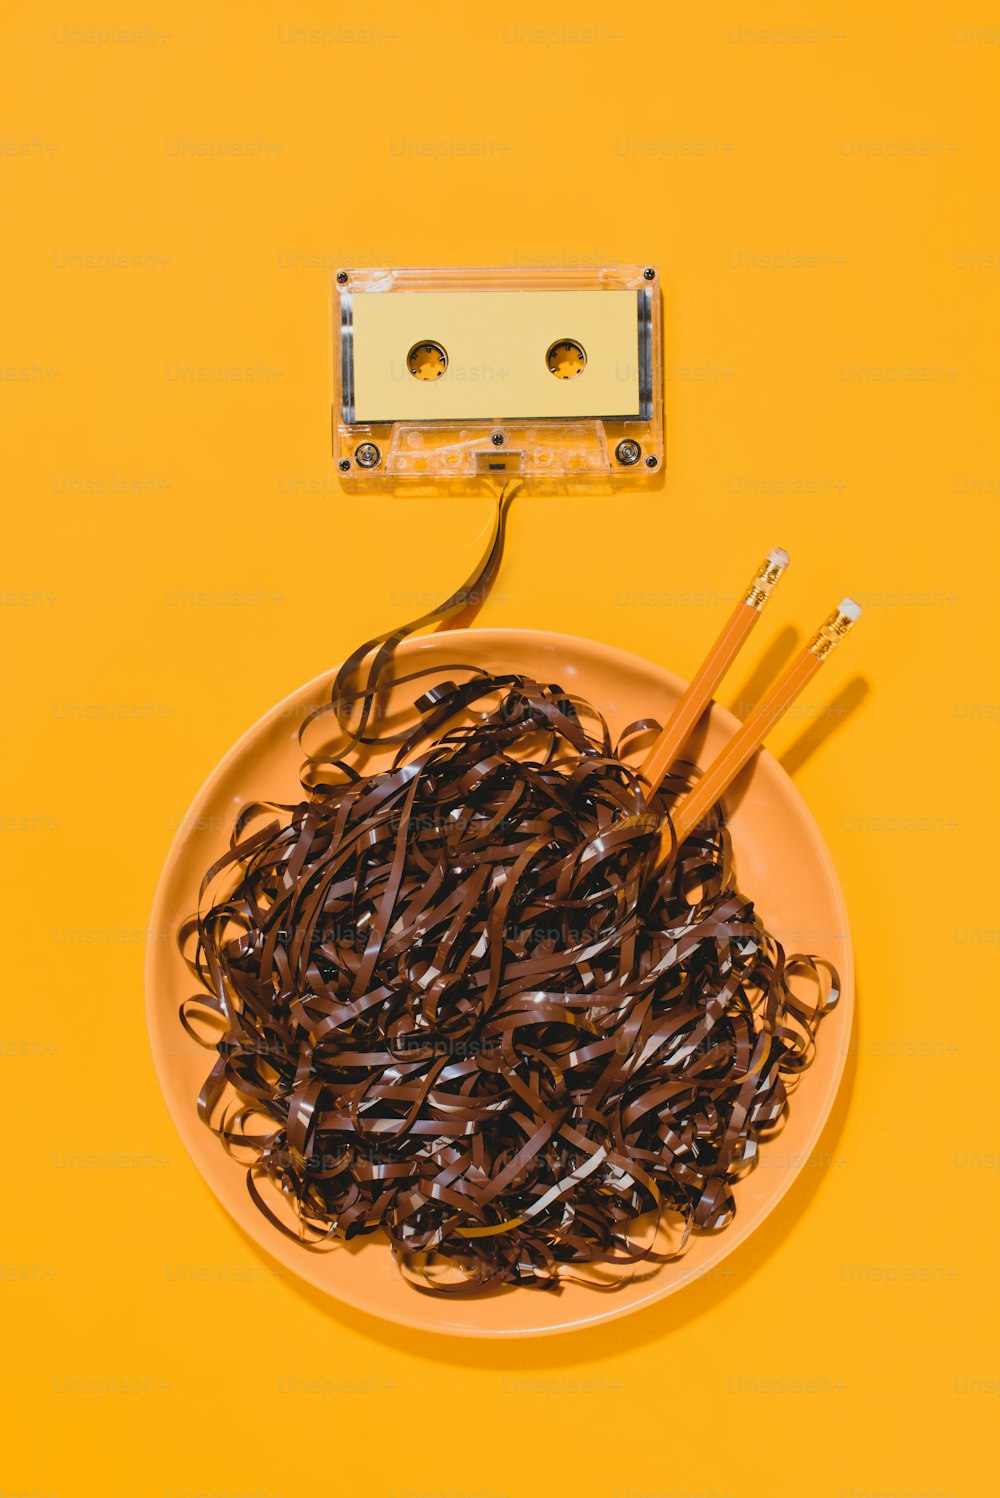 Flache Verlegung mit Retro-Audiokassette und Schüssel mit Bleistiften und Klebeband isoliert auf gelb